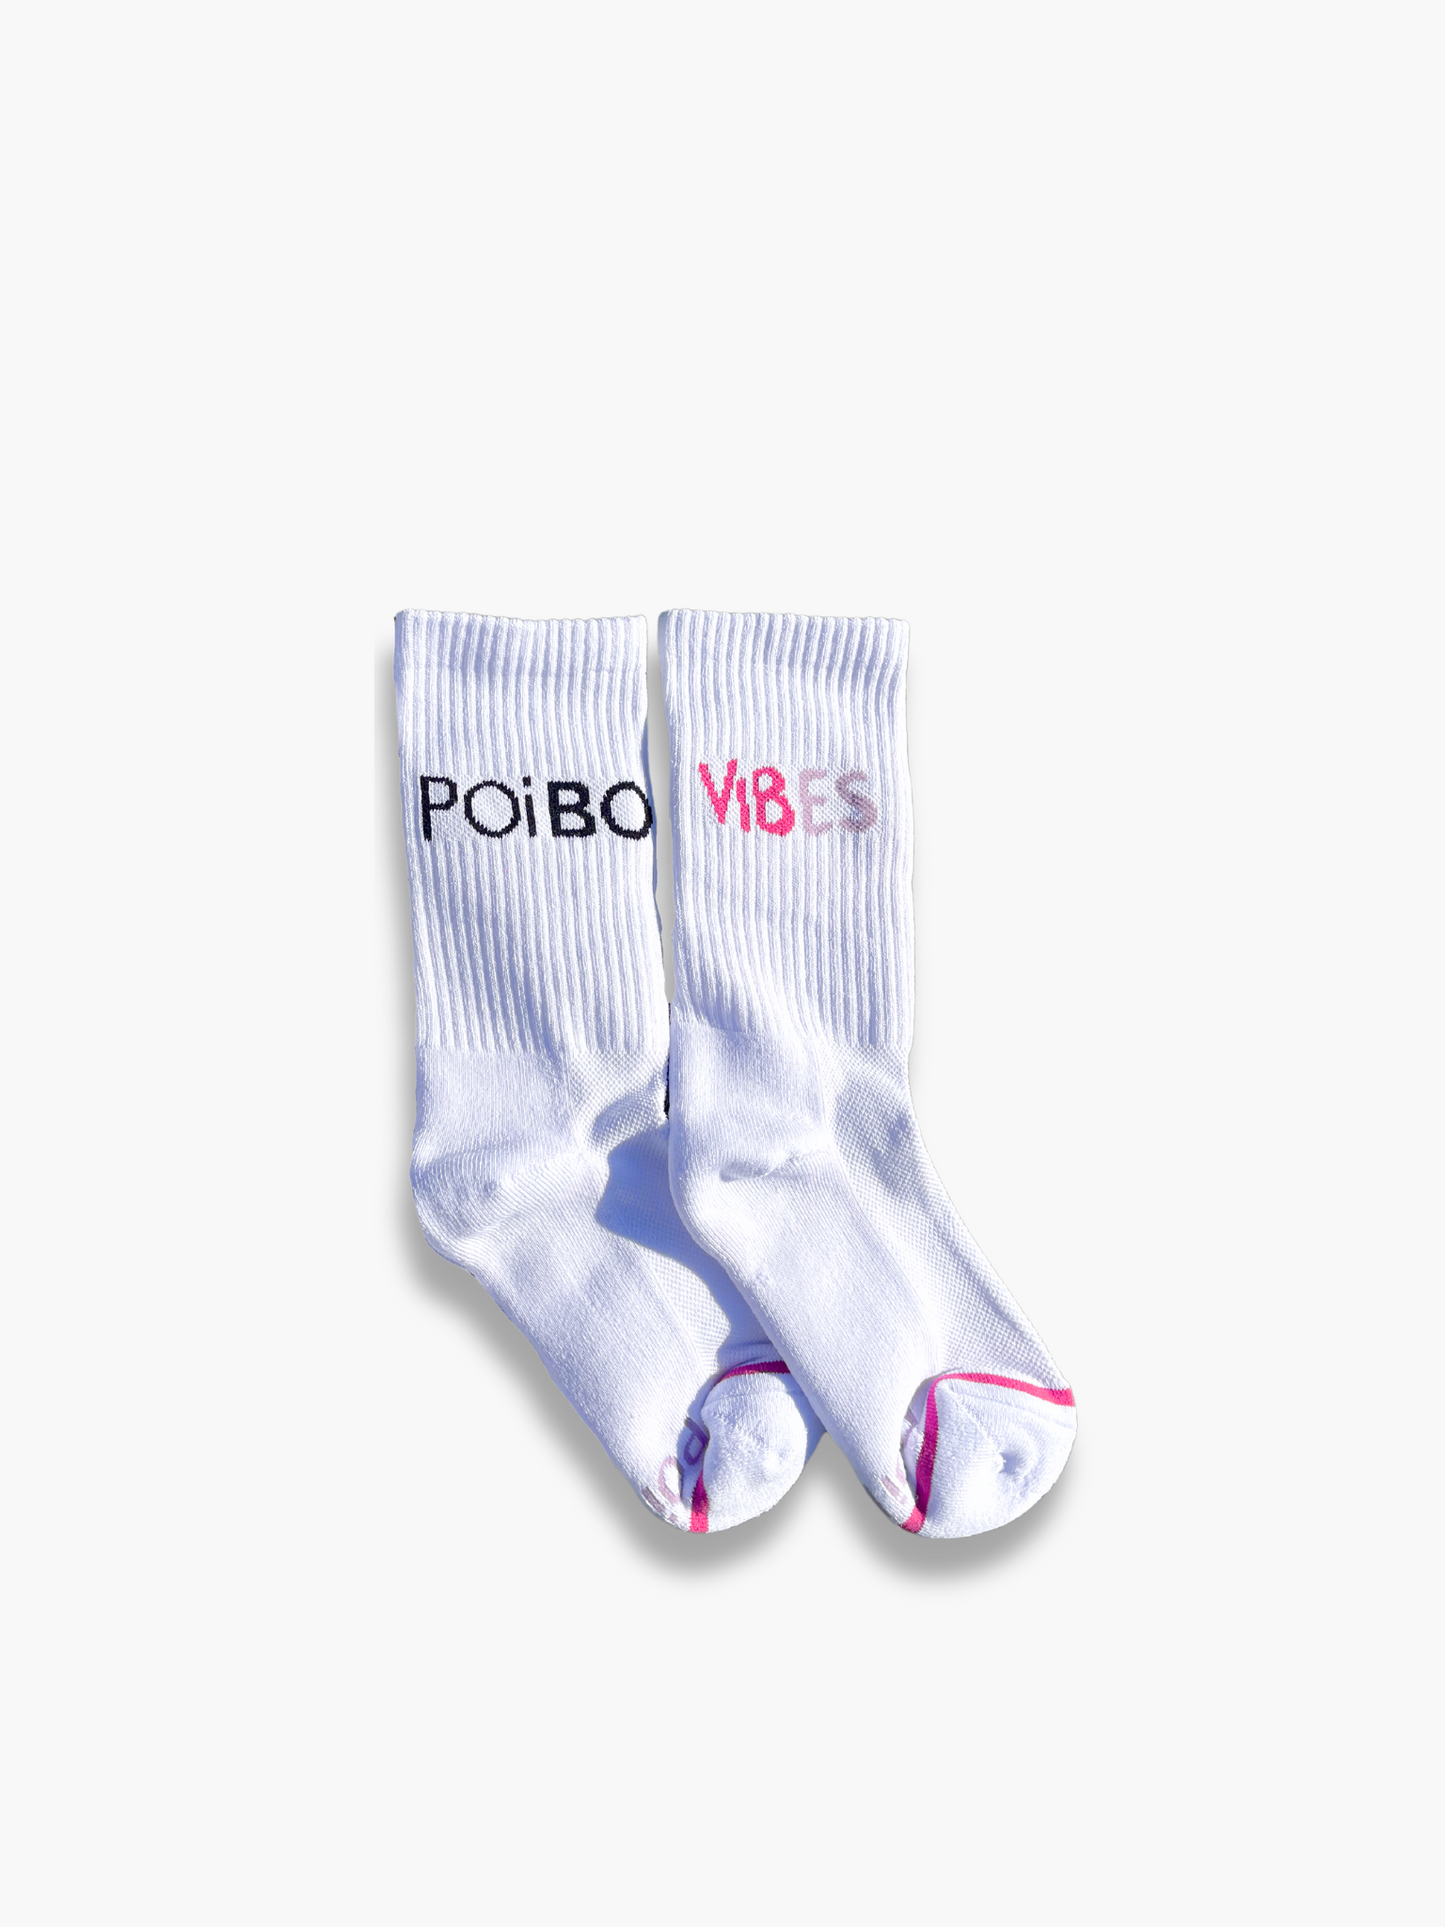 Vibes Socks 2.0